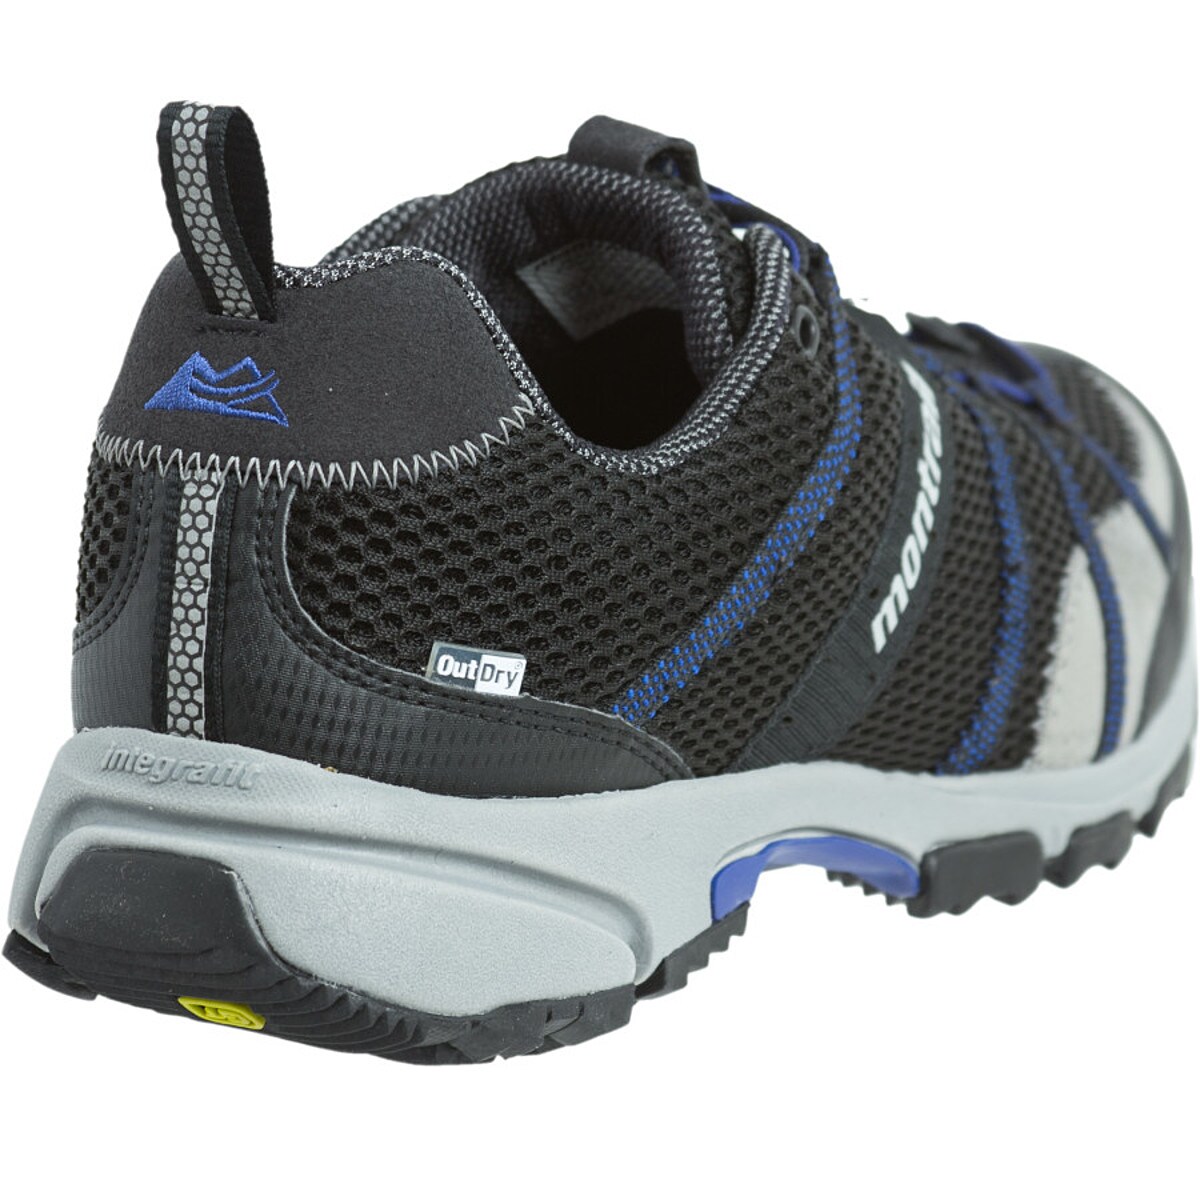 Montrail Mountain Masochist II OutDry Trail Running Shoe - Men's - Footwear